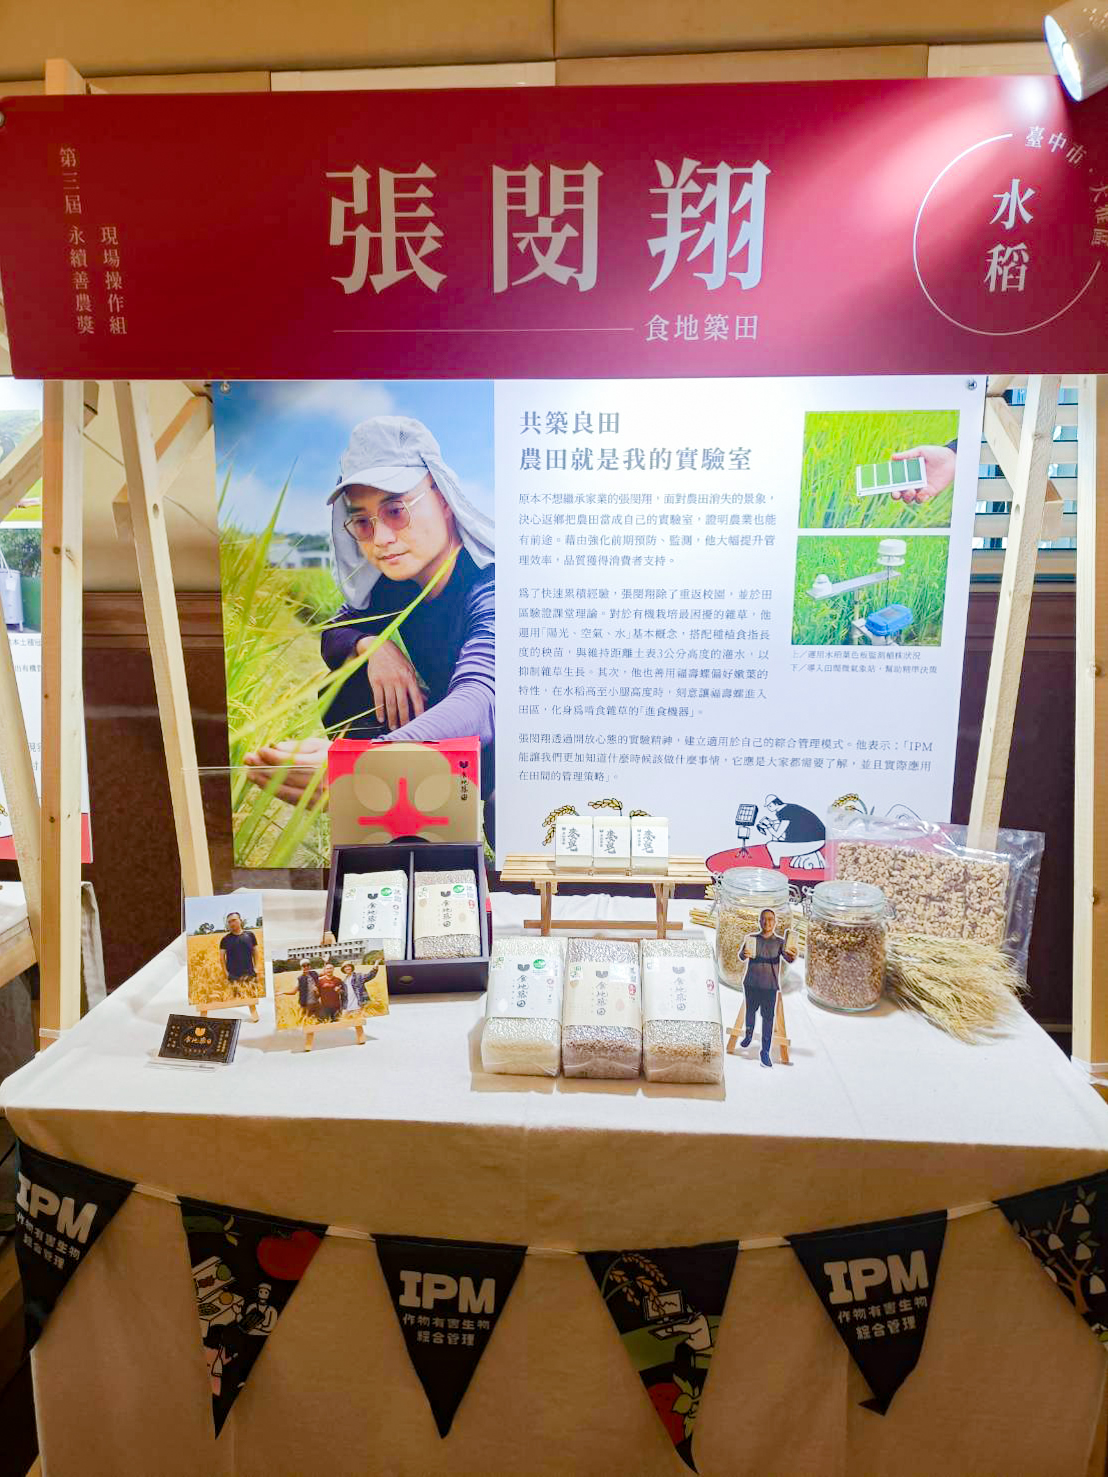 第三屆永續善農獎IPM Award臺中市大雅區張閔翔青農現場展示栽培成果。